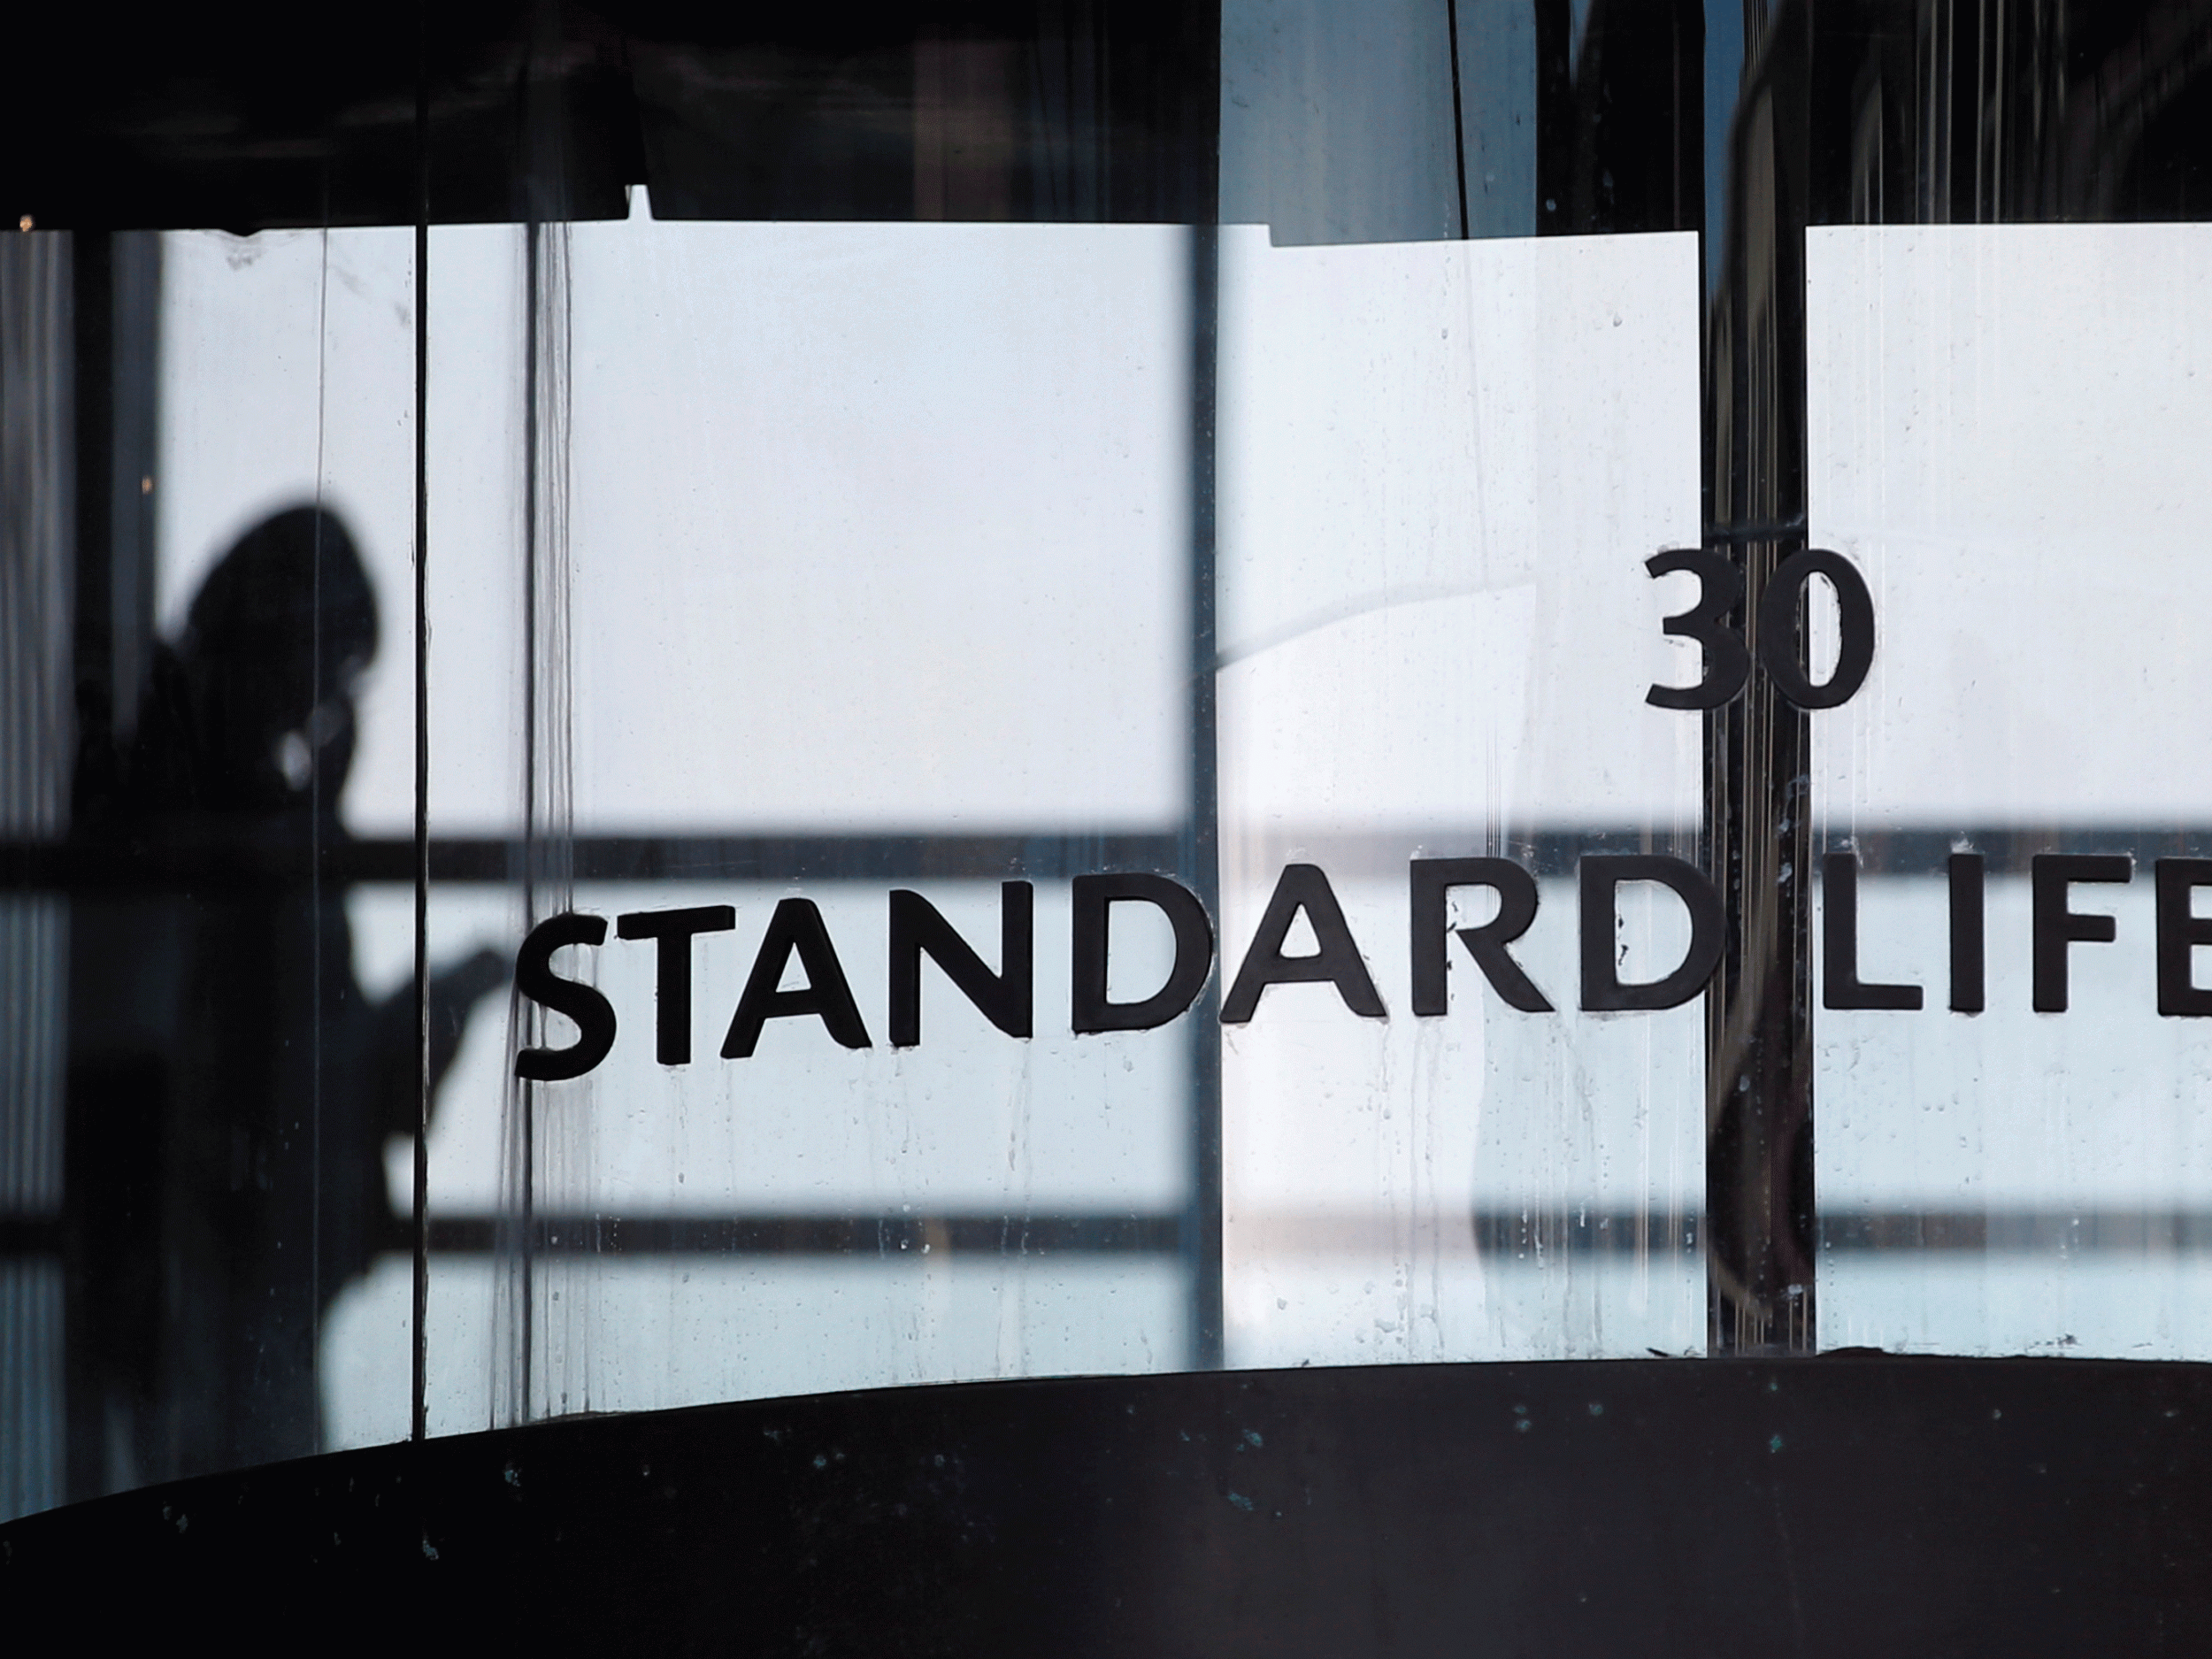 Standard Life and Aberdeen to cut 800 jobs after merger